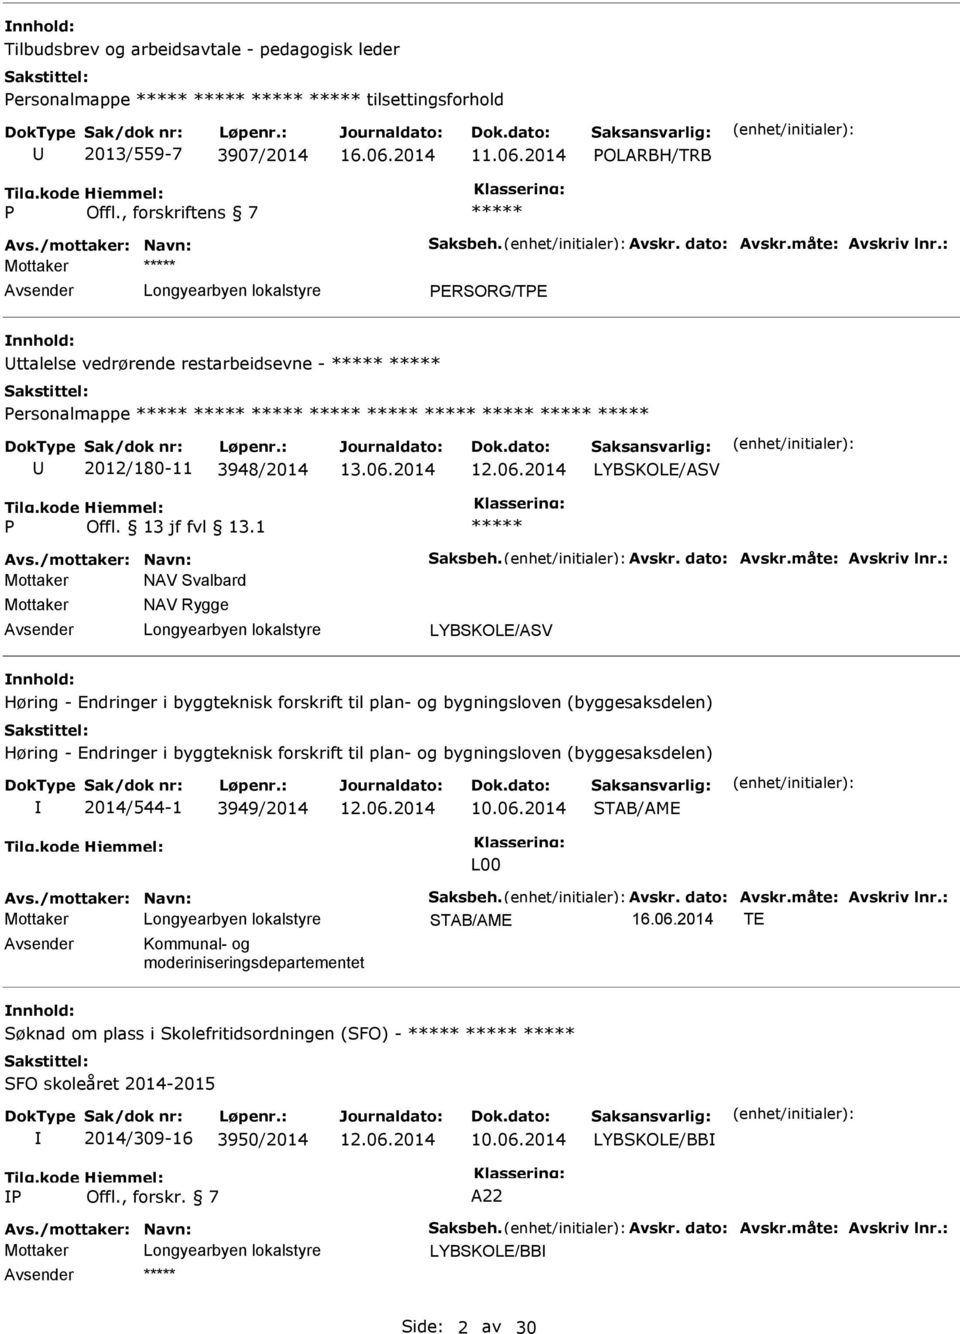 : Mottaker ttalelse vedrørende restarbeidsevne - Personalmappe 2012/180-11 3948/2014 P.1 vs./mottaker: Navn: Saksbeh. vskr. dato: vskr.